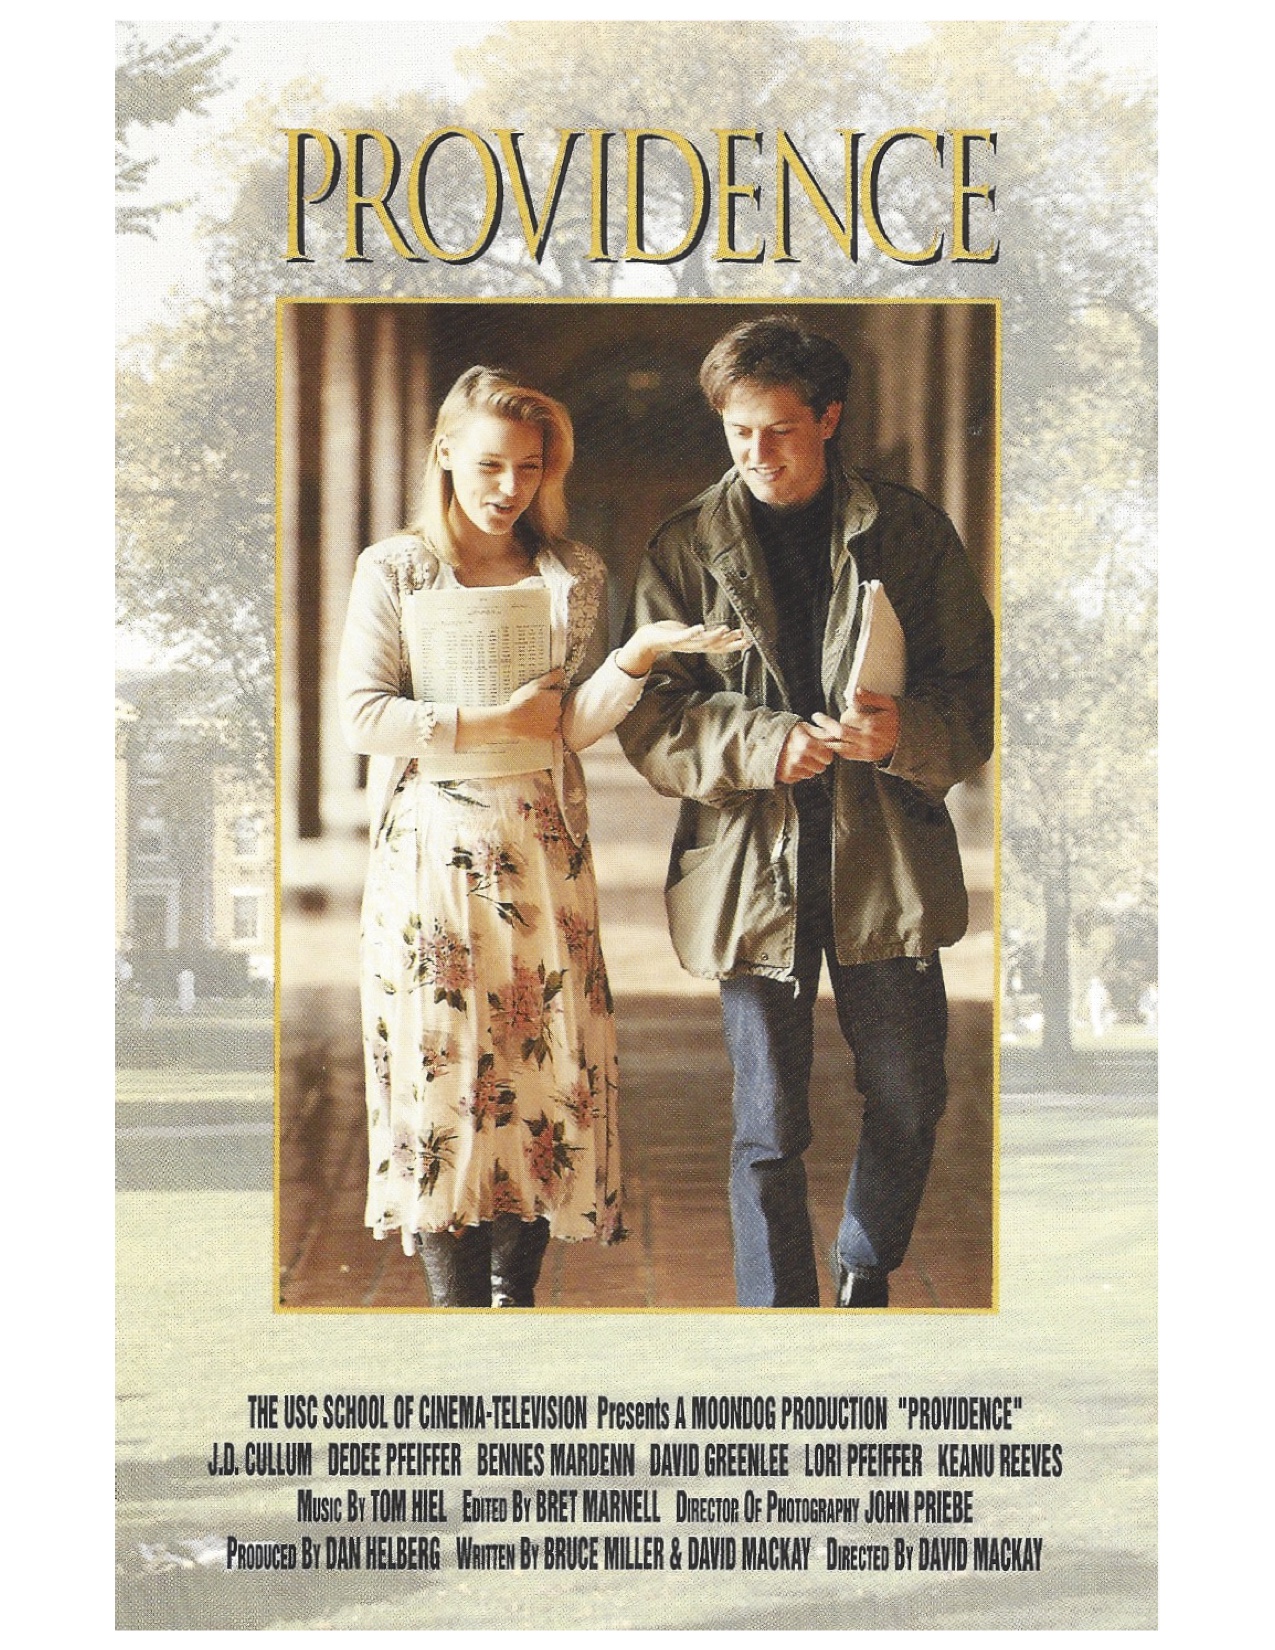  فیلم سینمایی Providence با حضور JD Cullum و Dedee Pfeiffer